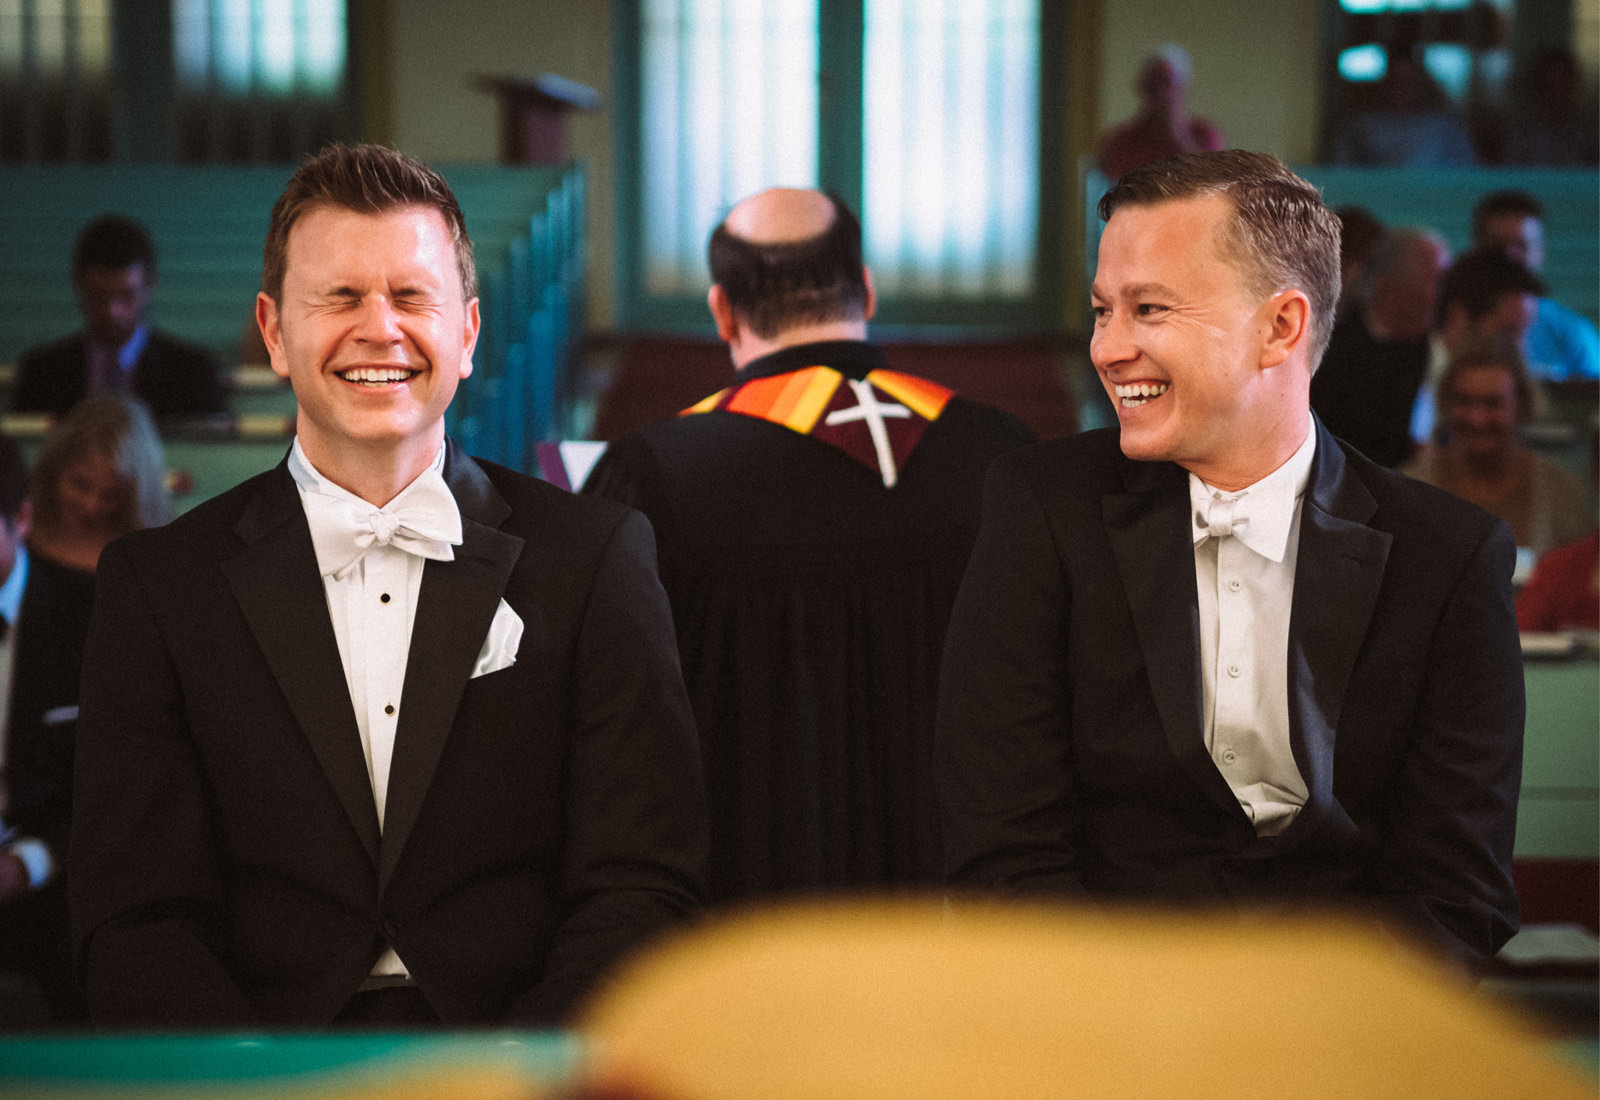 Same-sex wedding at Schlosshotel Kronberg